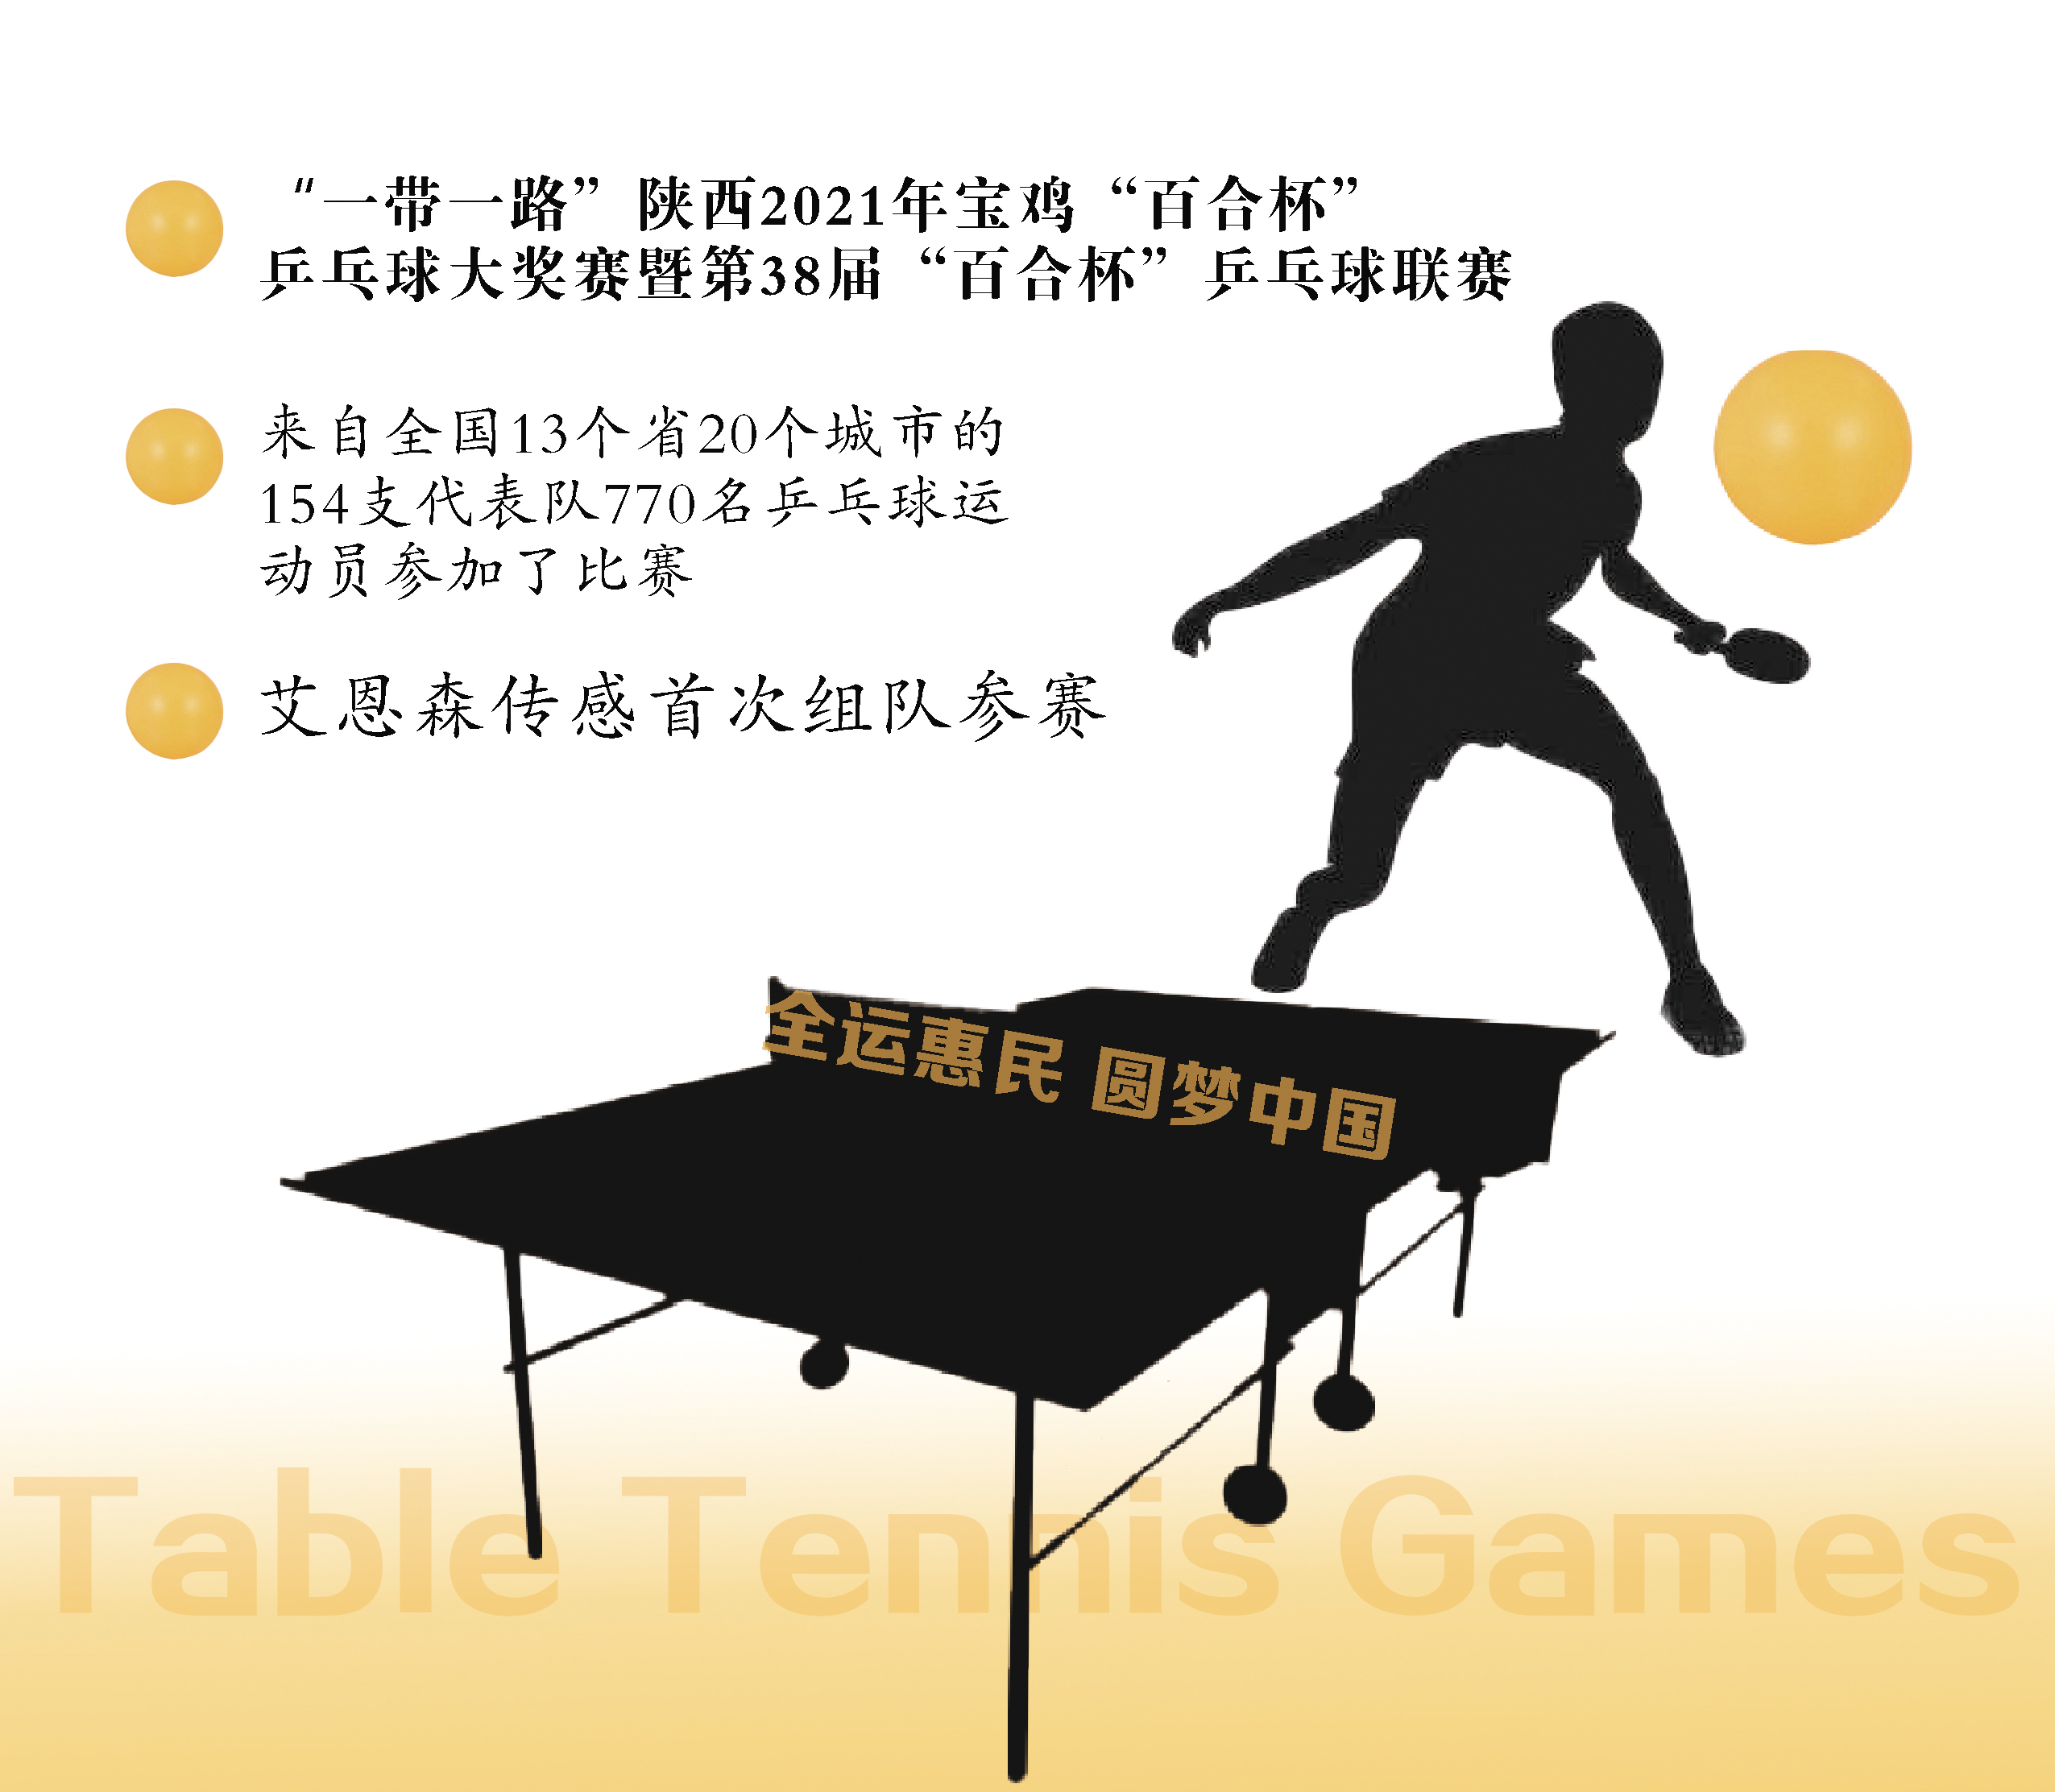 全运惠民 圆梦中国 ——艾恩森传感首次组队参加“百合杯”全国乒乓球赛事